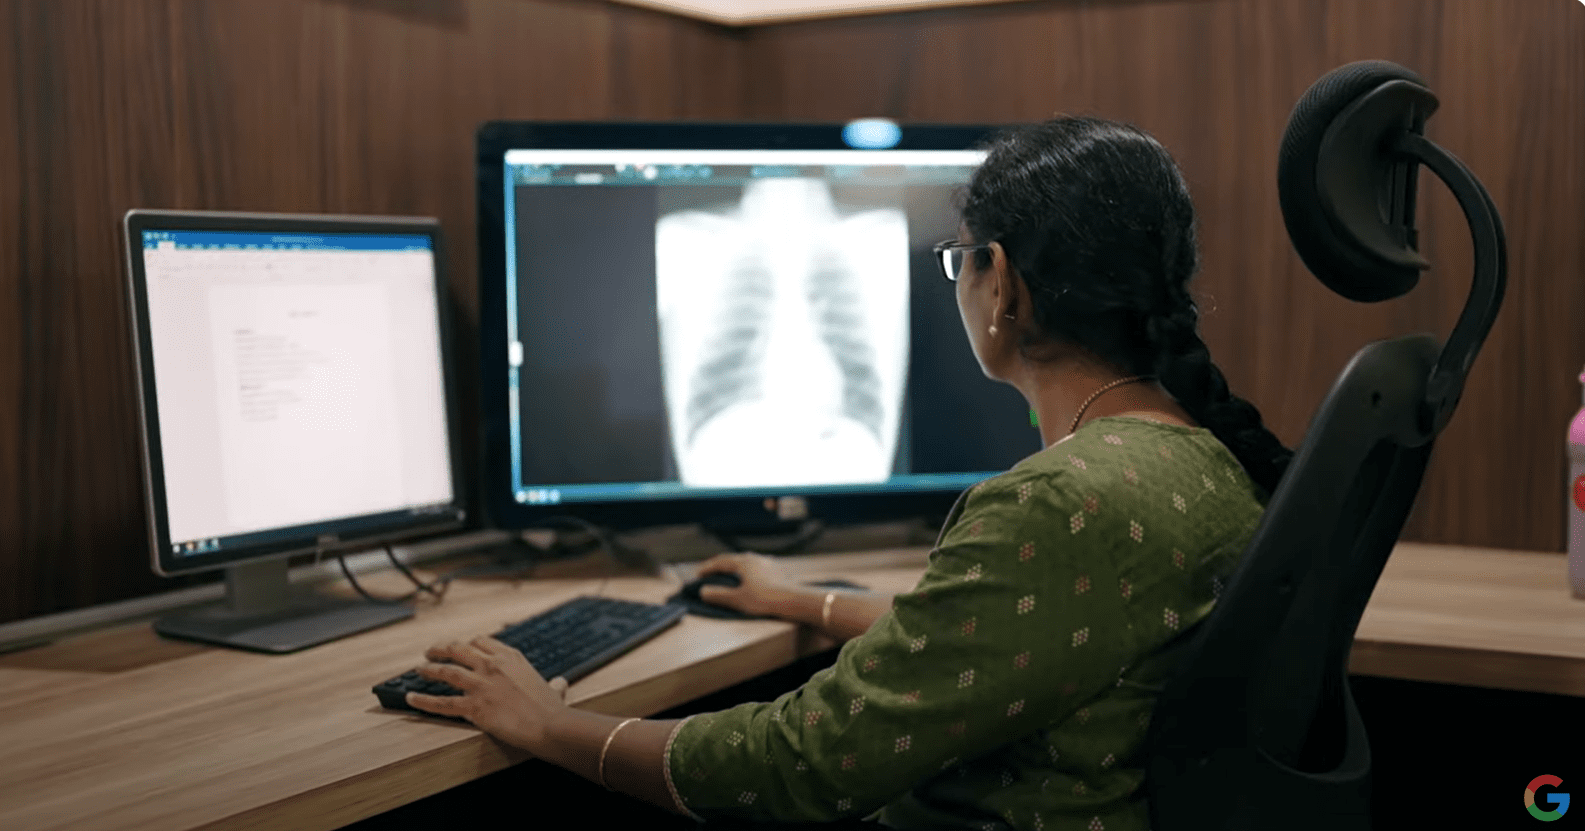 Free AI Cancer & TB Screenings for India: Google & Apollo's Initiative